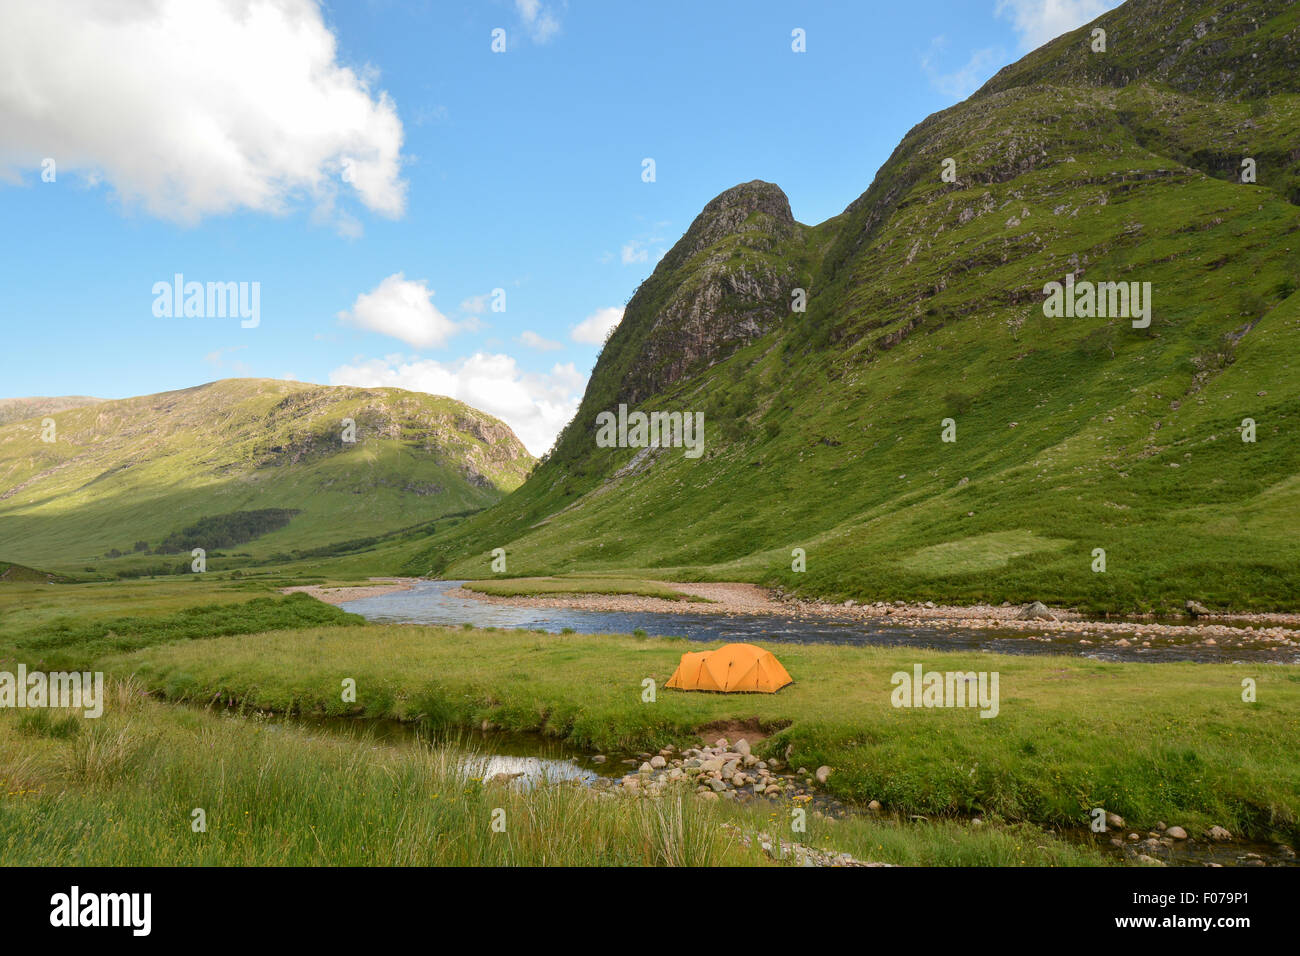 Camping sauvage dans la région de Glen Etive, près de Glencoe, les Highlands écossais, UK Banque D'Images